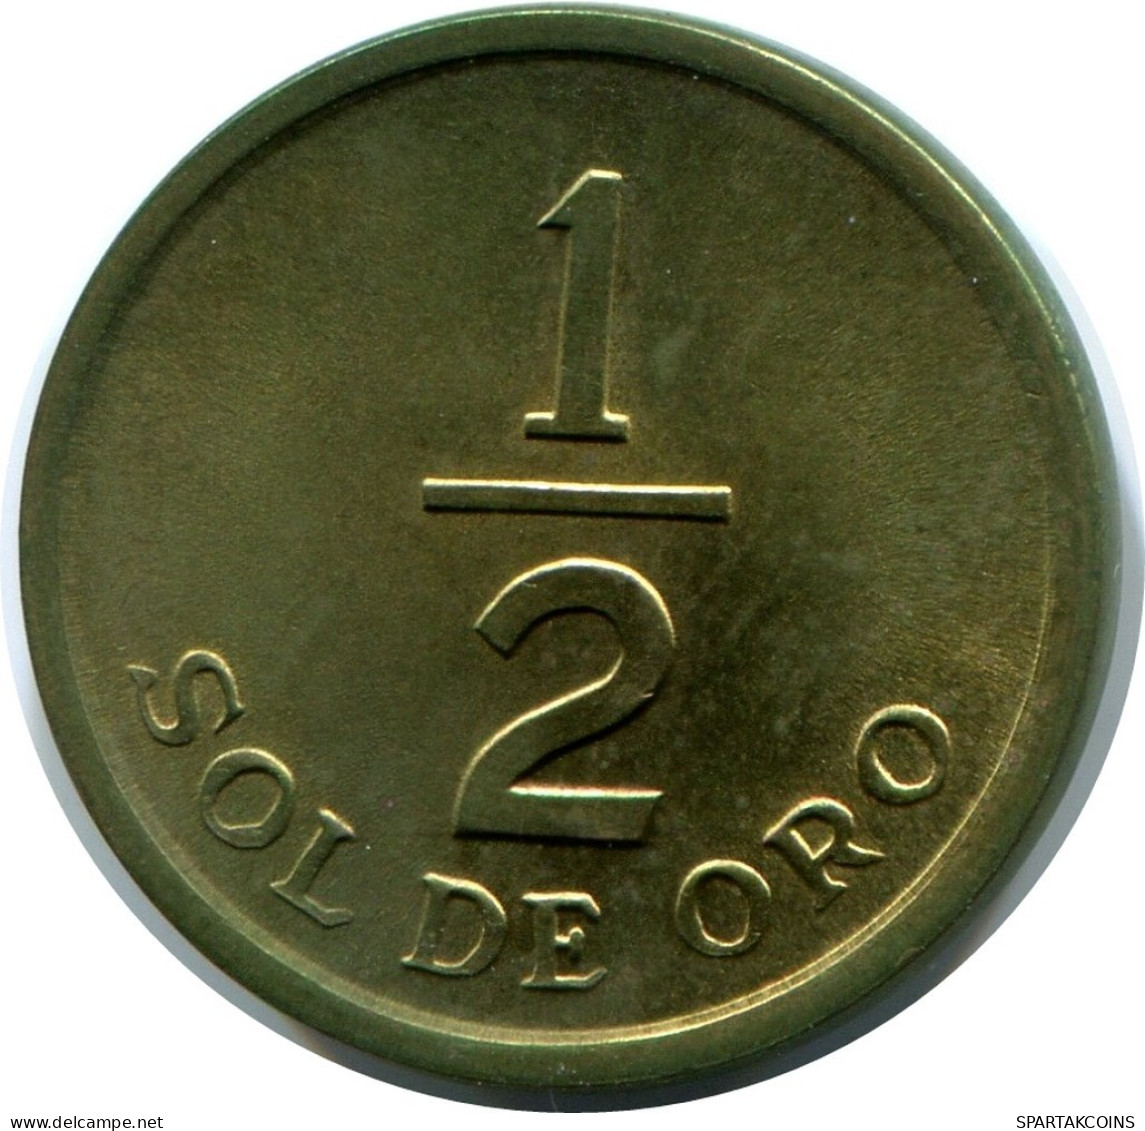 1/2 SOL 1976 PERUANO PERU Moneda #AZ074.E.A - Pérou